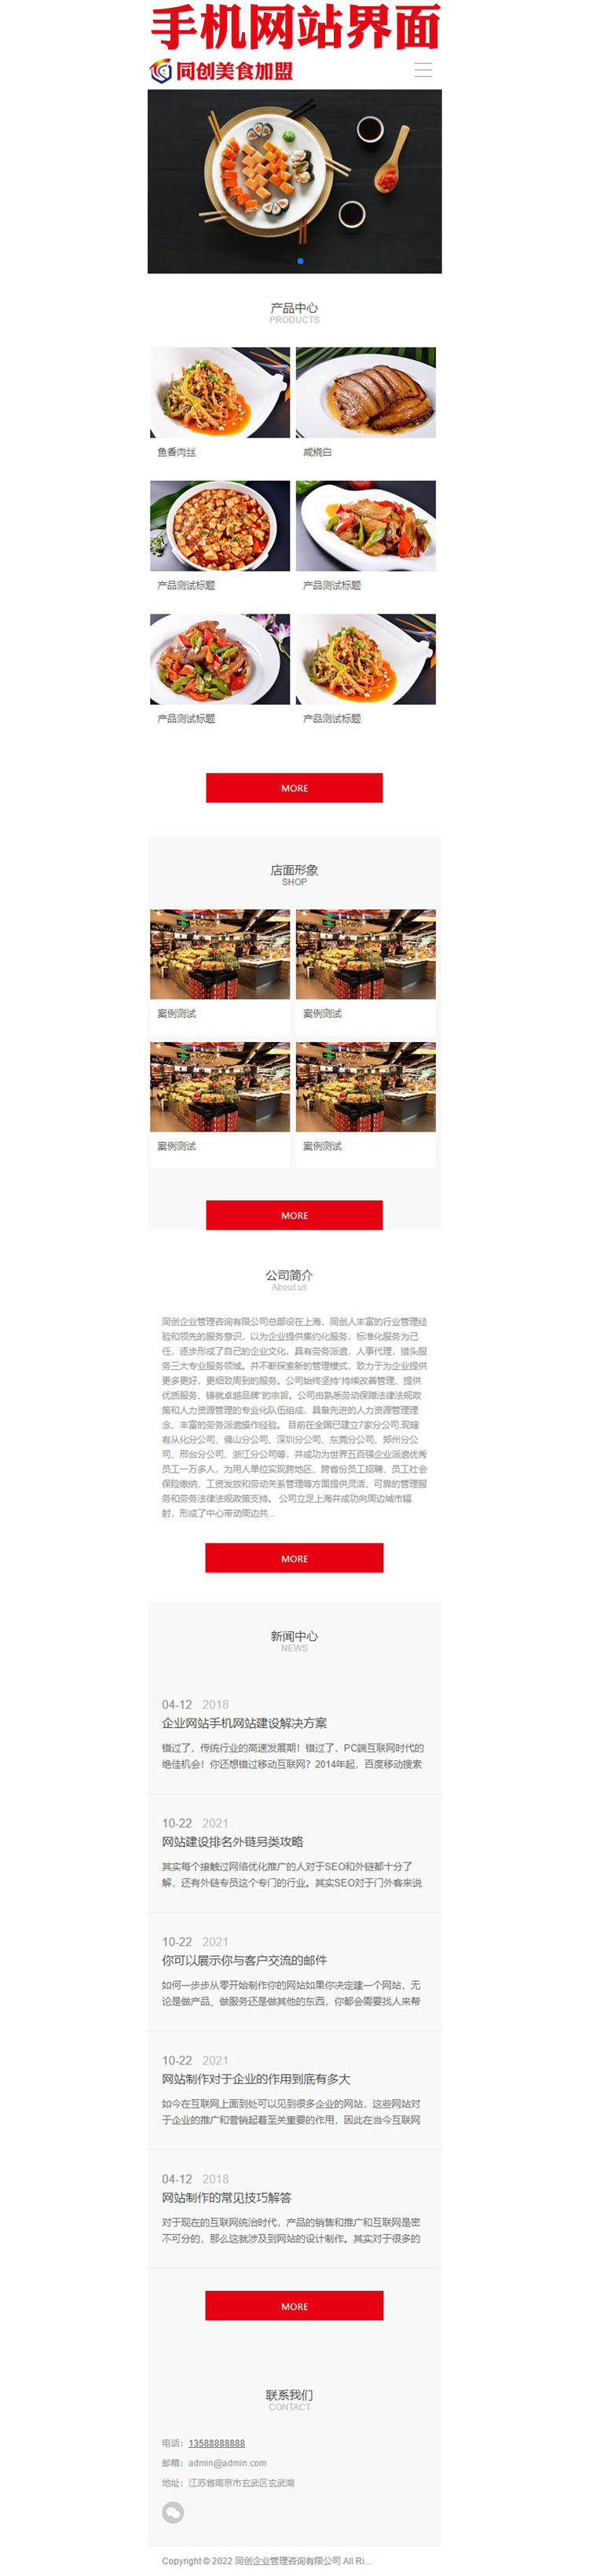 高端餐饮美食加盟网站模板程序-ZP003-3